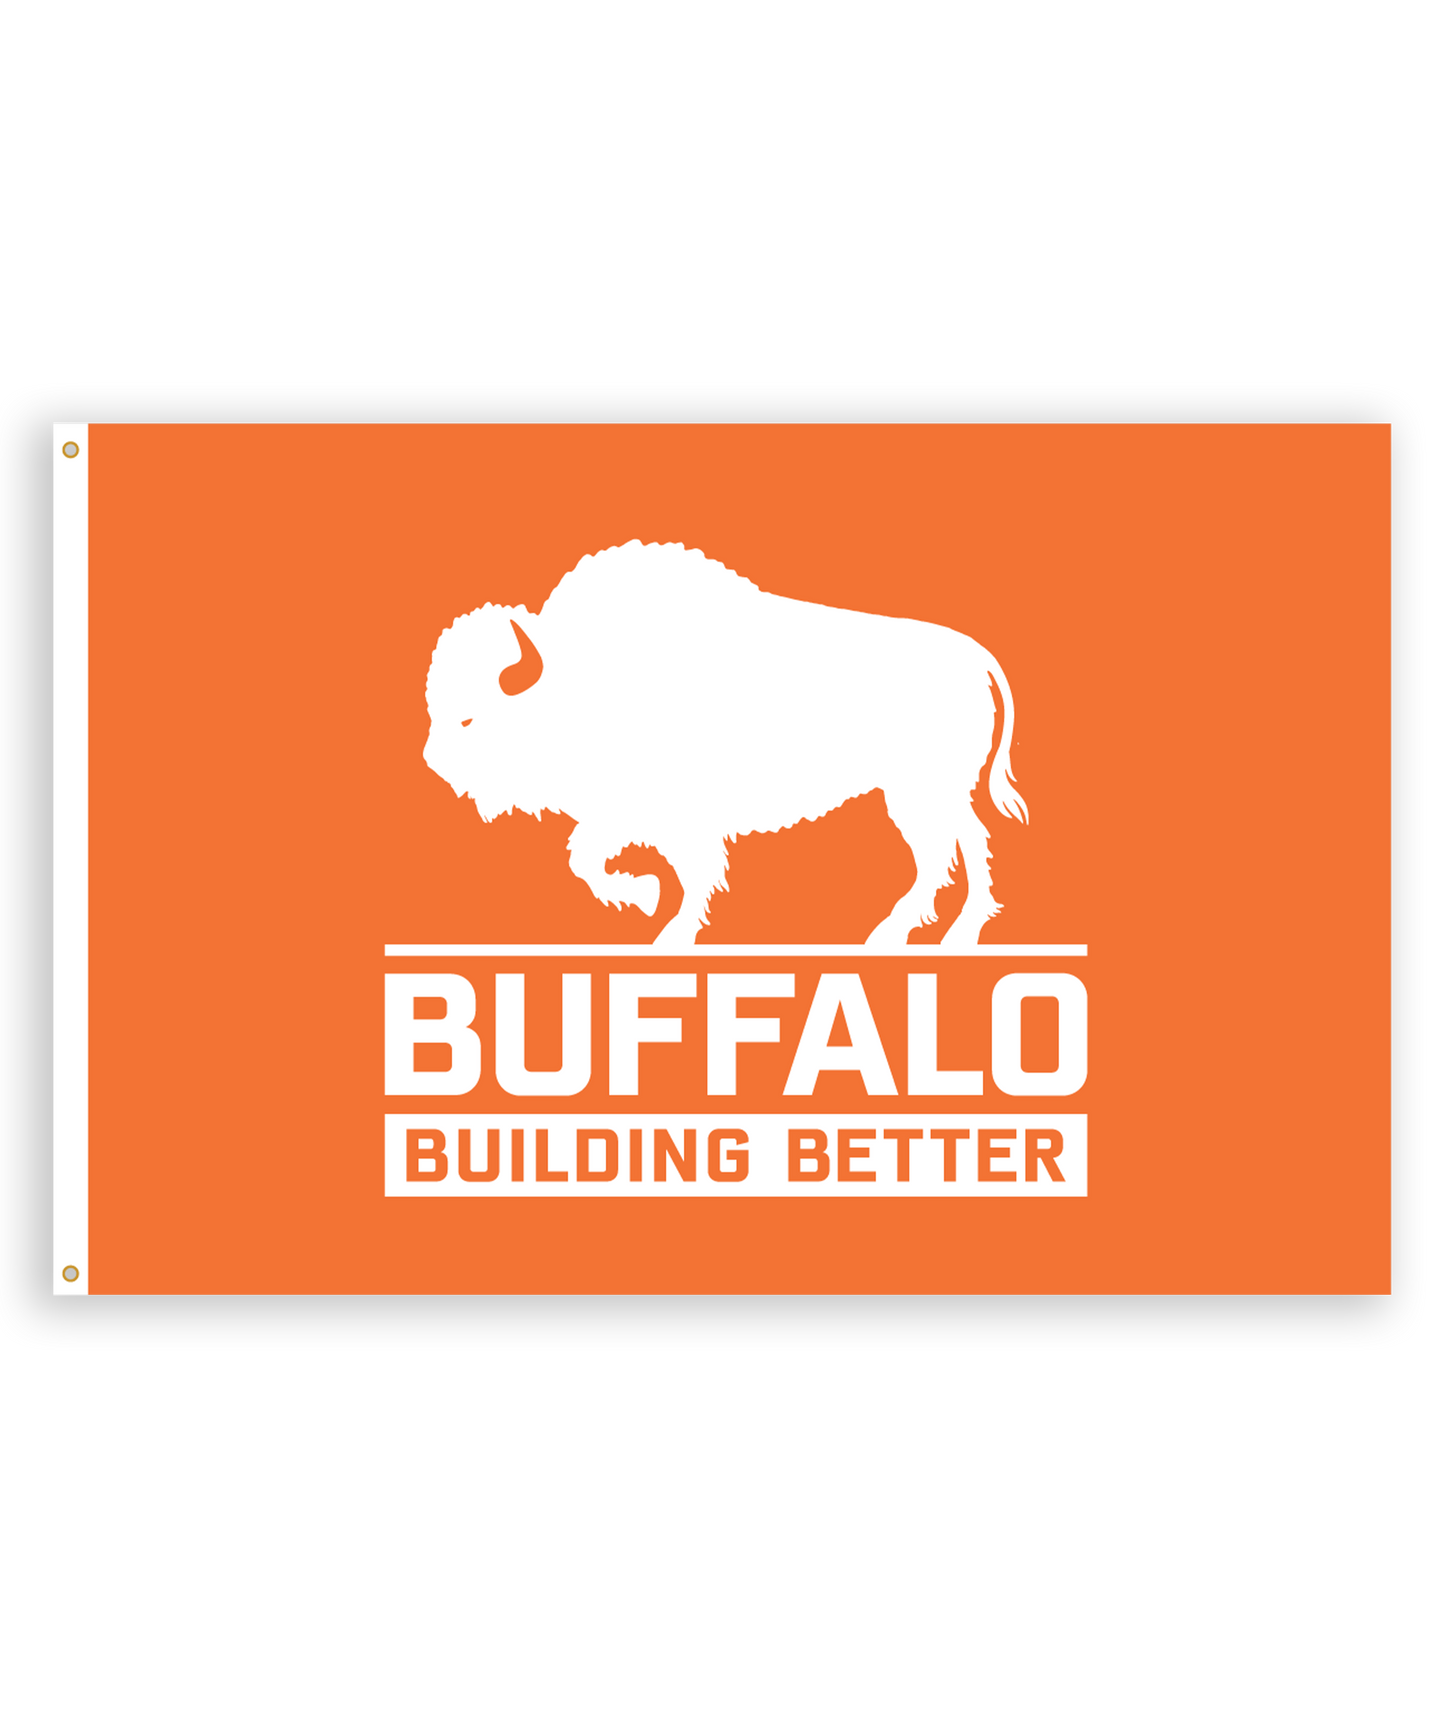 Buffalo Construction Flag